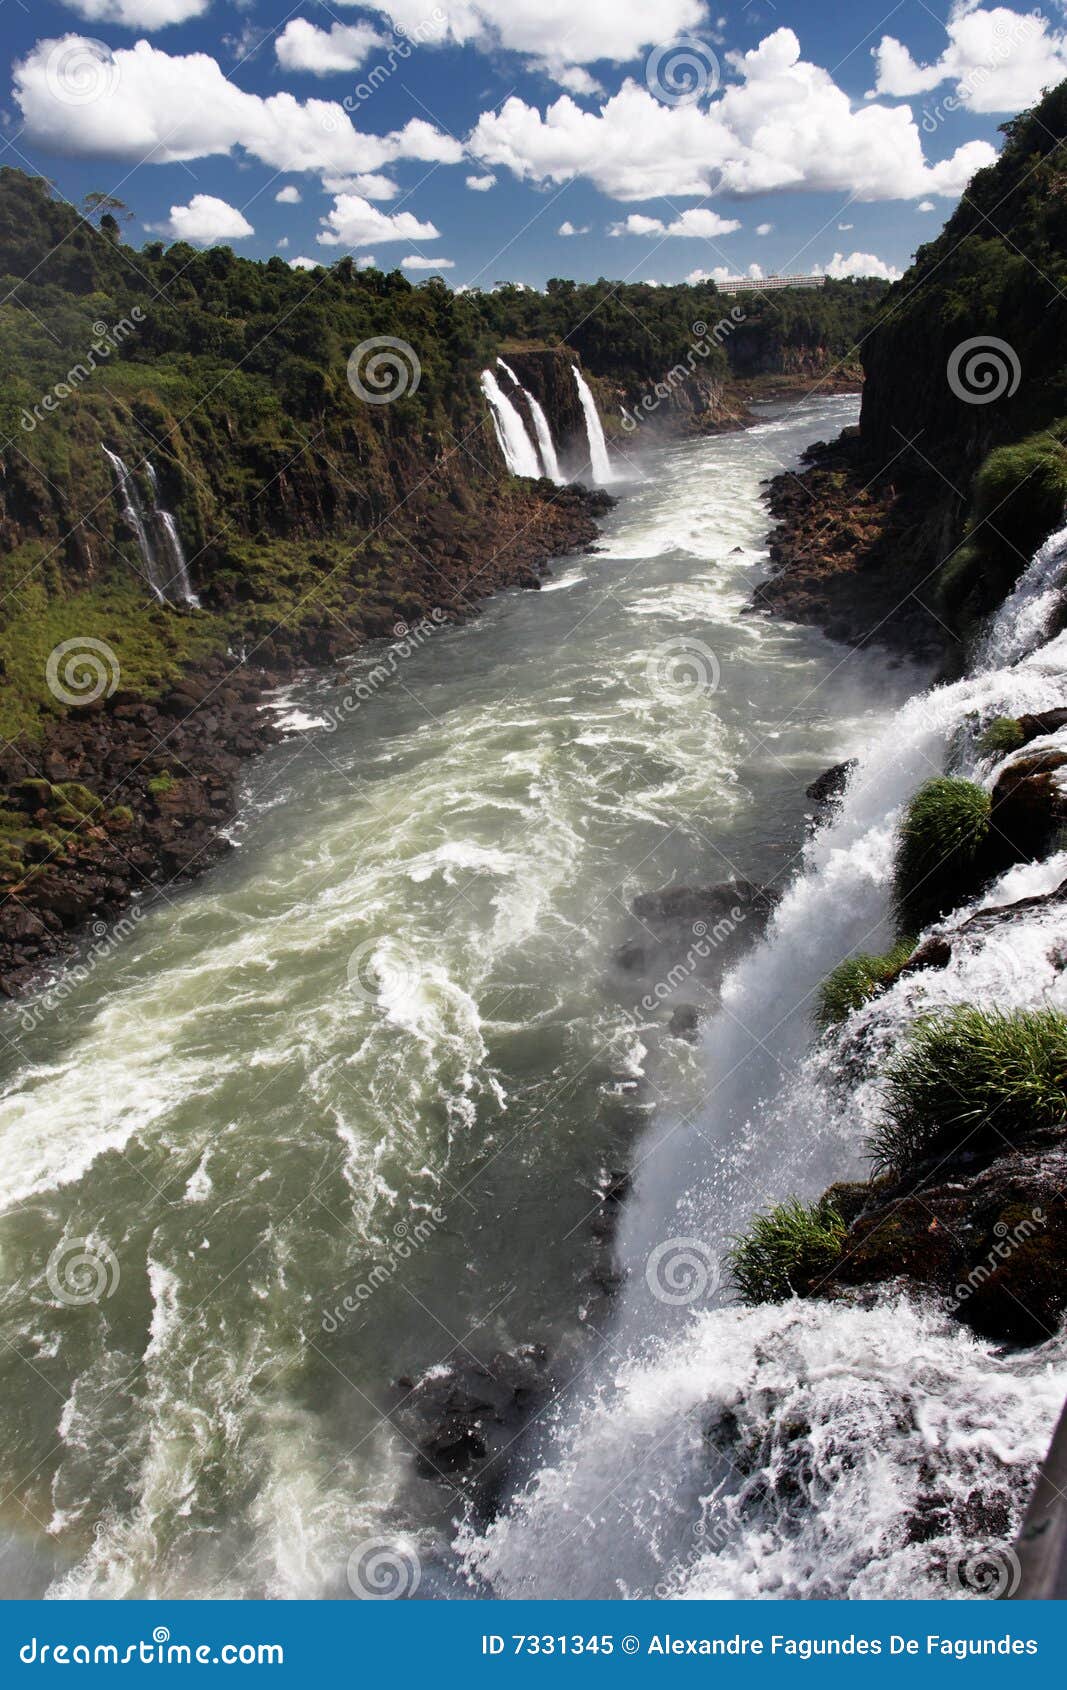 foz do iguassu falls